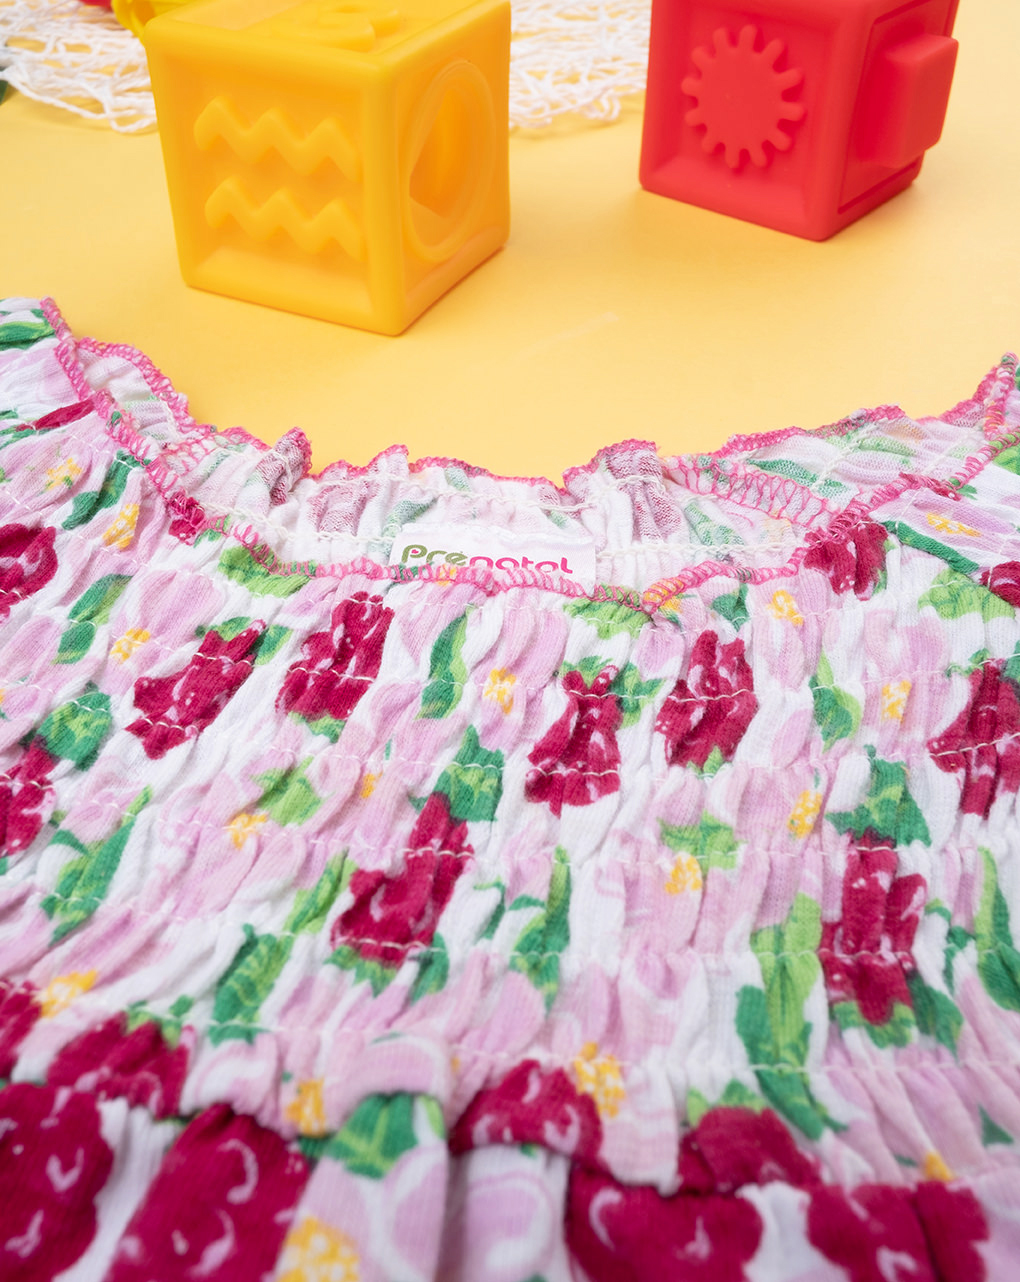 φόρεμα σφηκοφωλιά με λουλουδάκια για κορίτσι - Prénatal